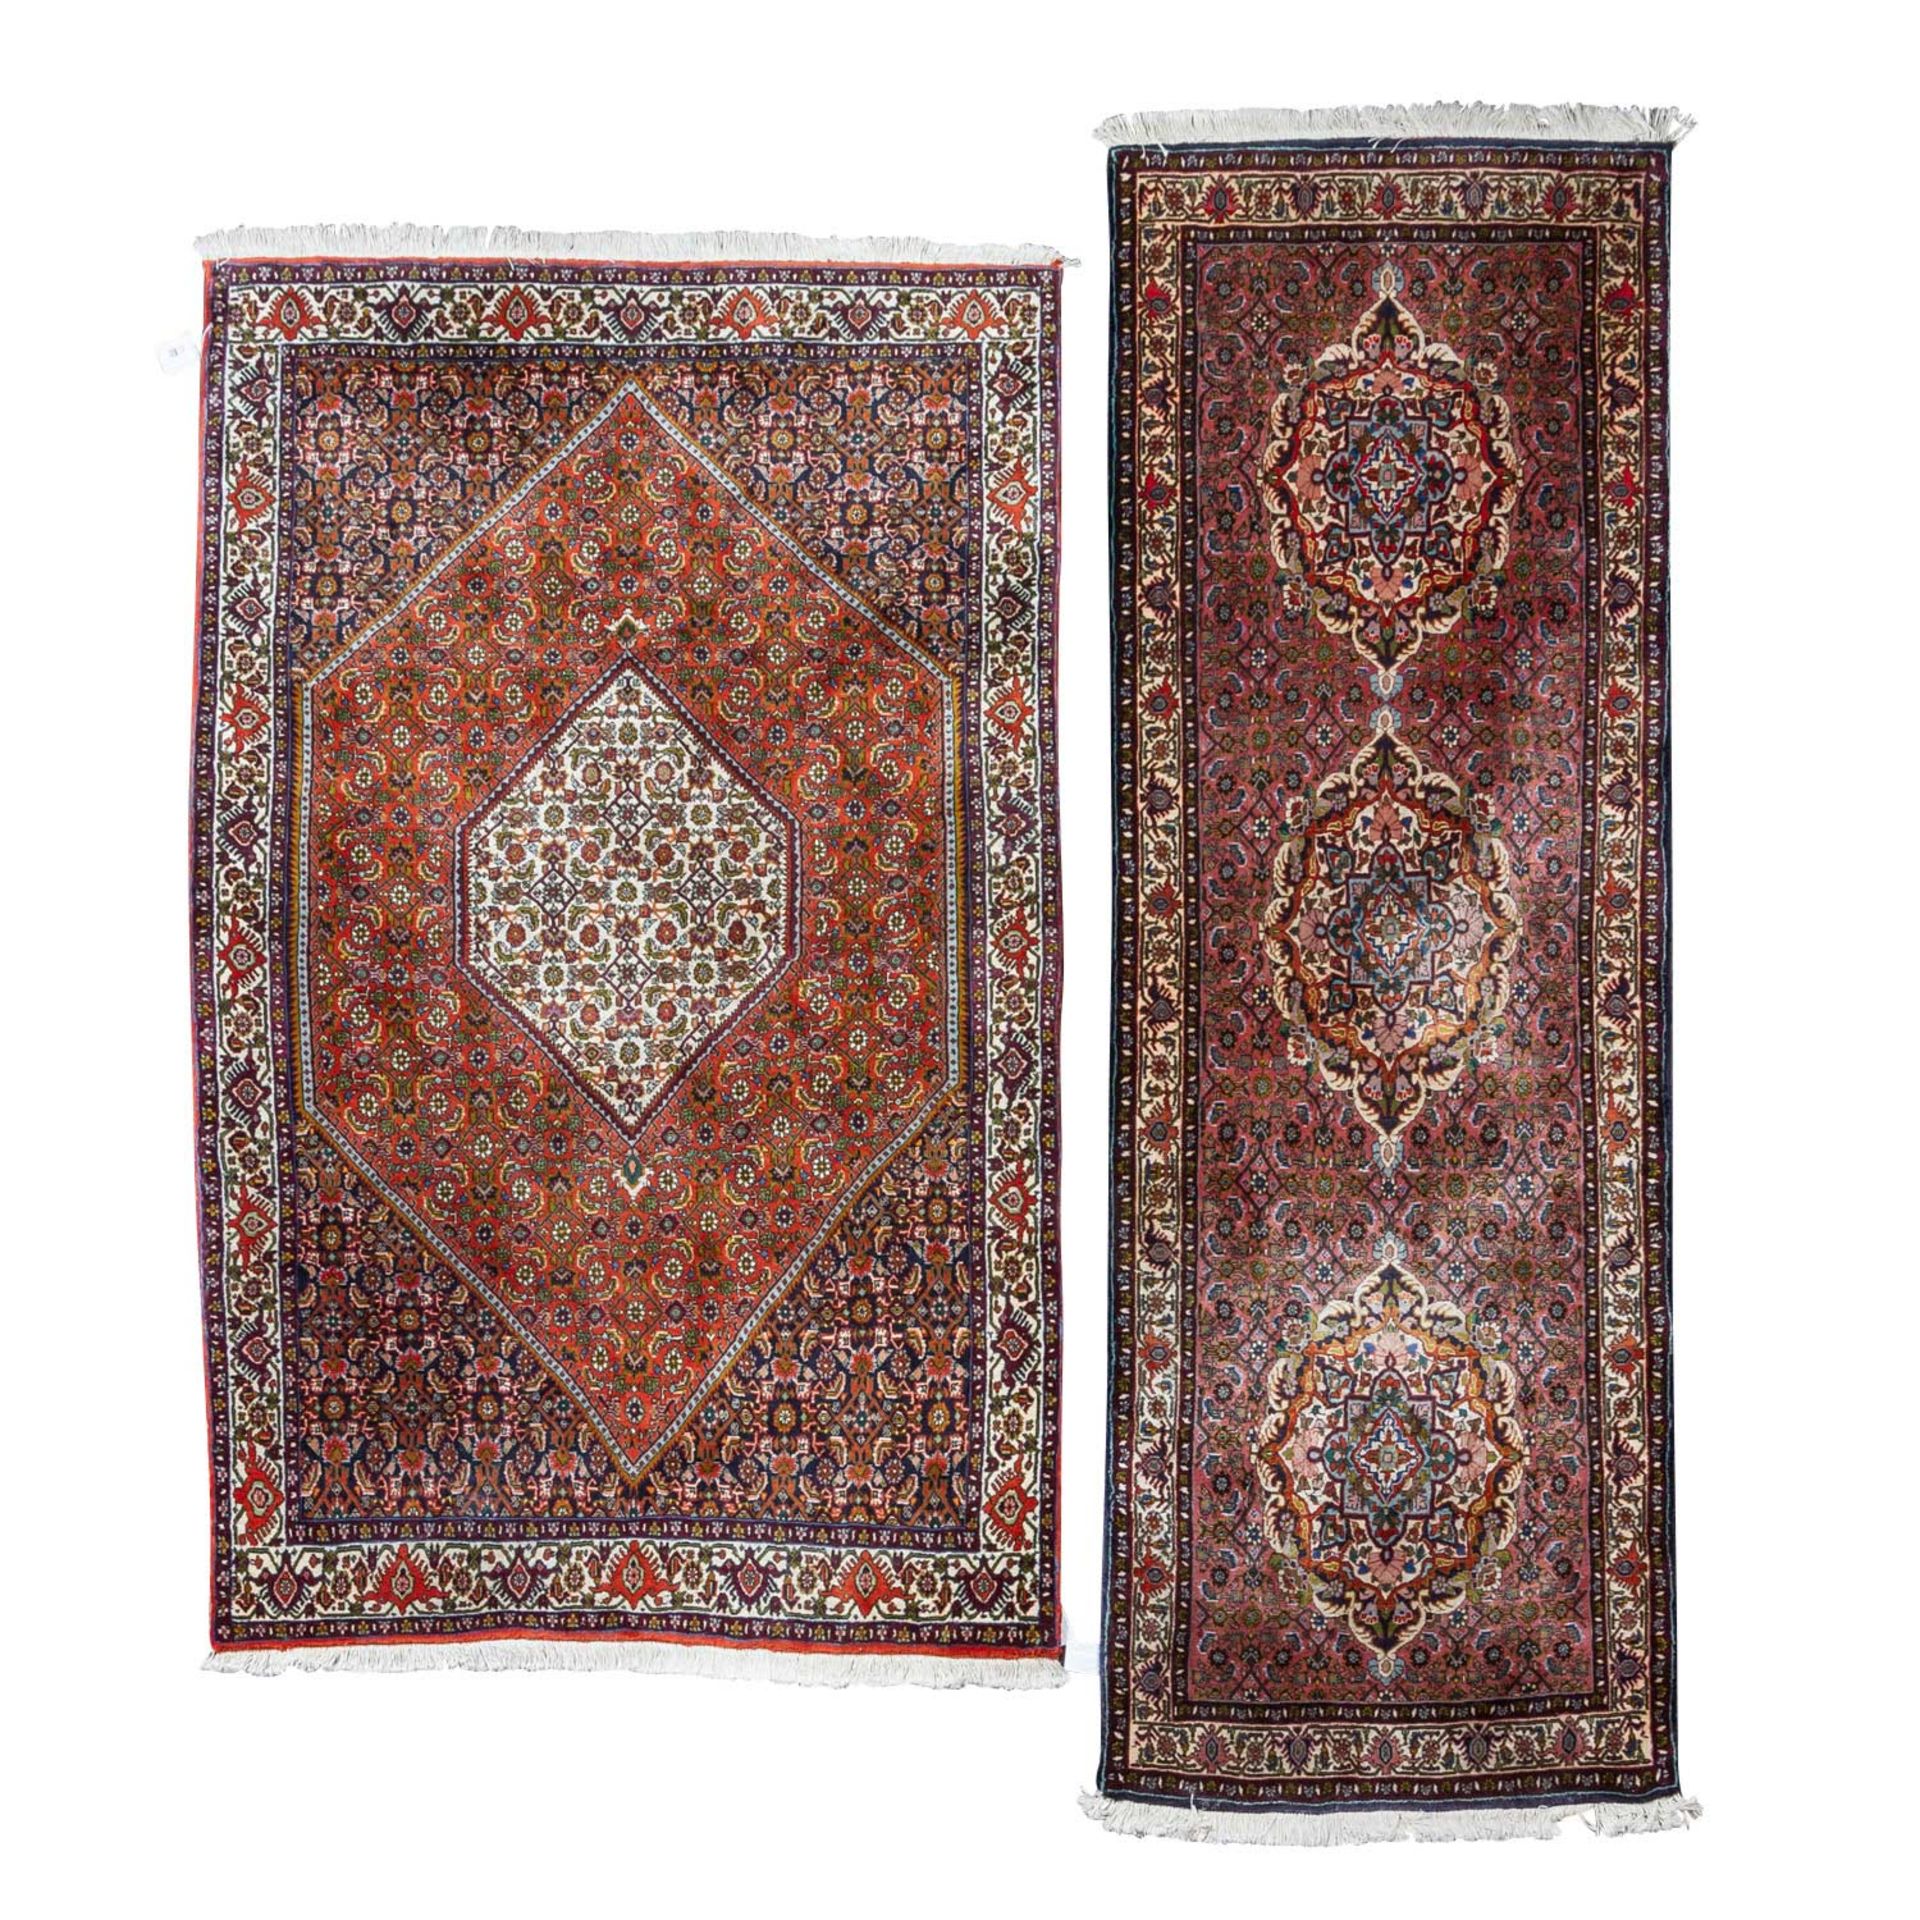 Zwei Orientteppiche. BIDJAR/IRAN, 20. Jh..182x113 cm und 220x75 cm. Normale Alters- und